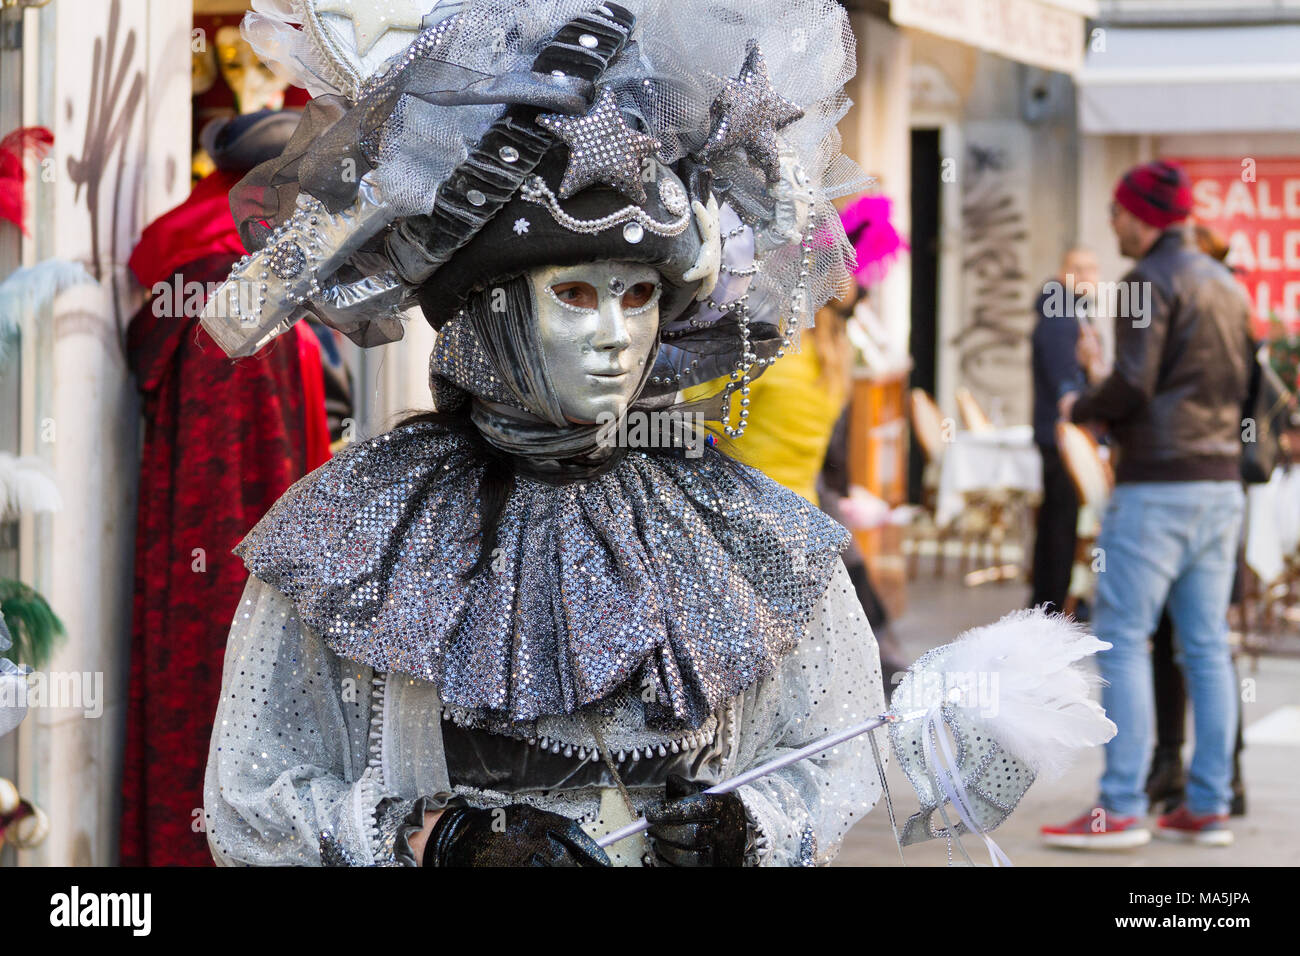 Venezia (Venise), Italie. 2 février 2018. Une personne en masque sur le carnaval de Venise. Banque D'Images